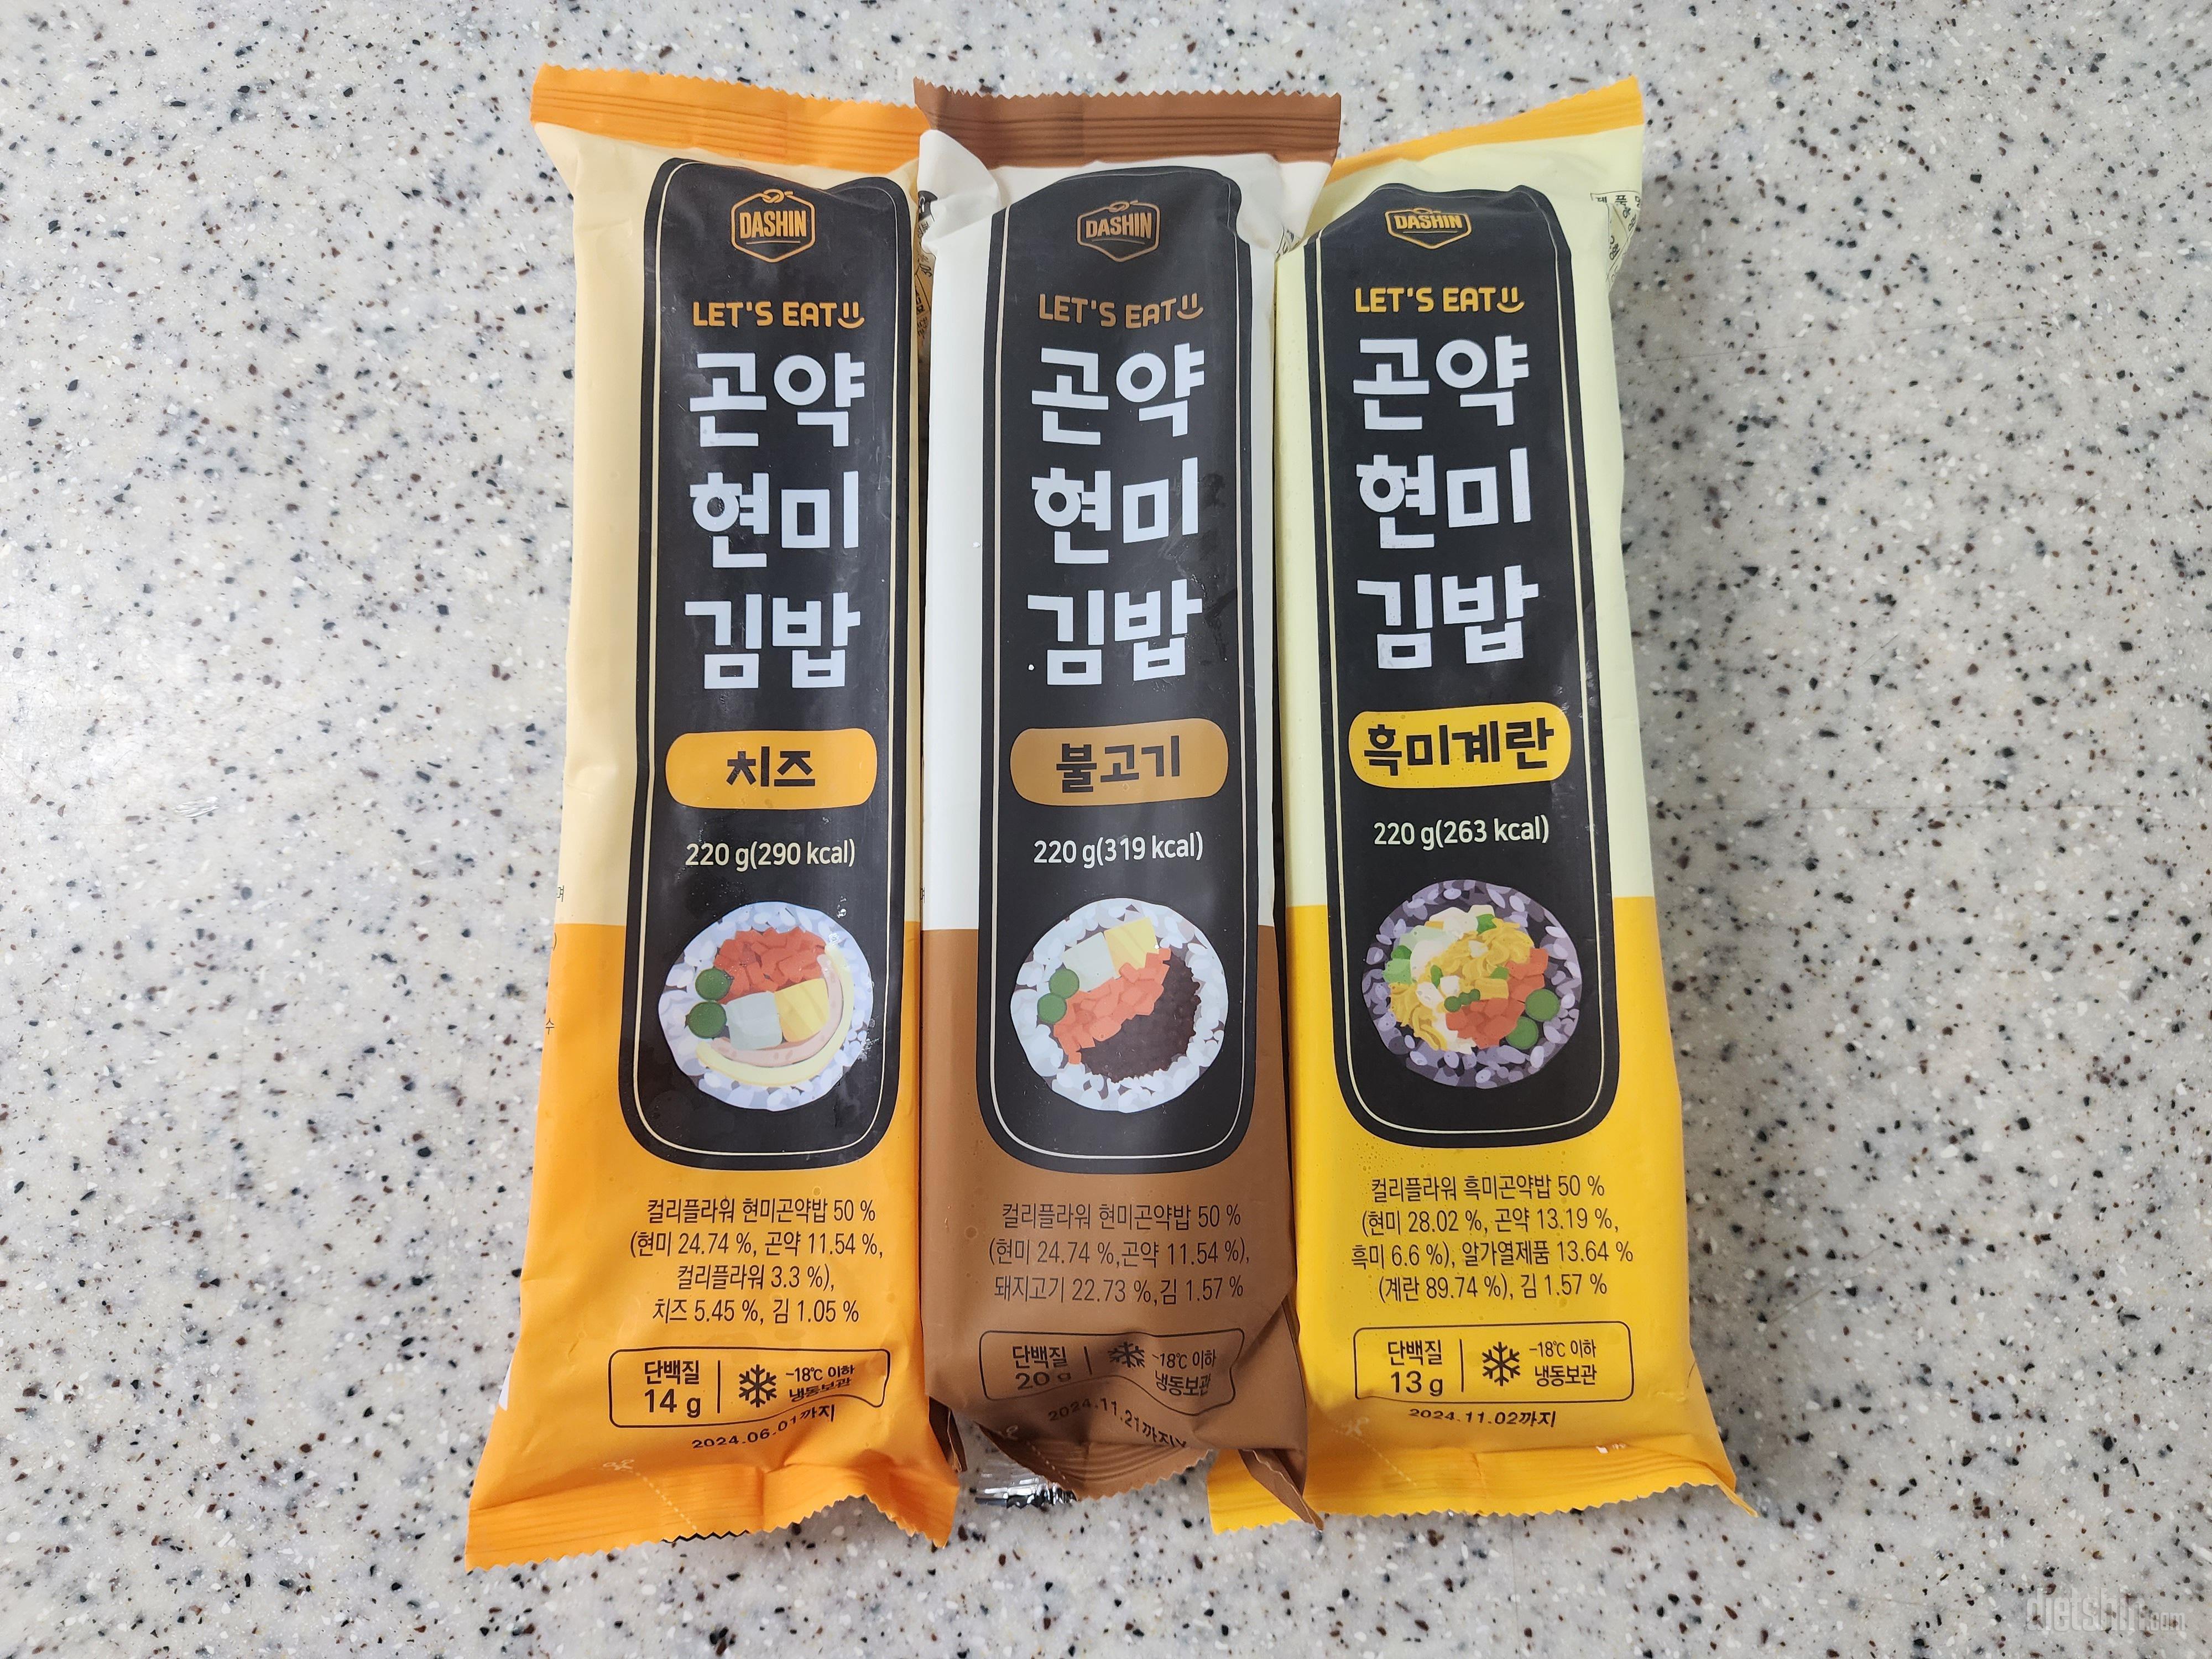 요즘 김밥이 핫하죠?😘
냉동 김밥